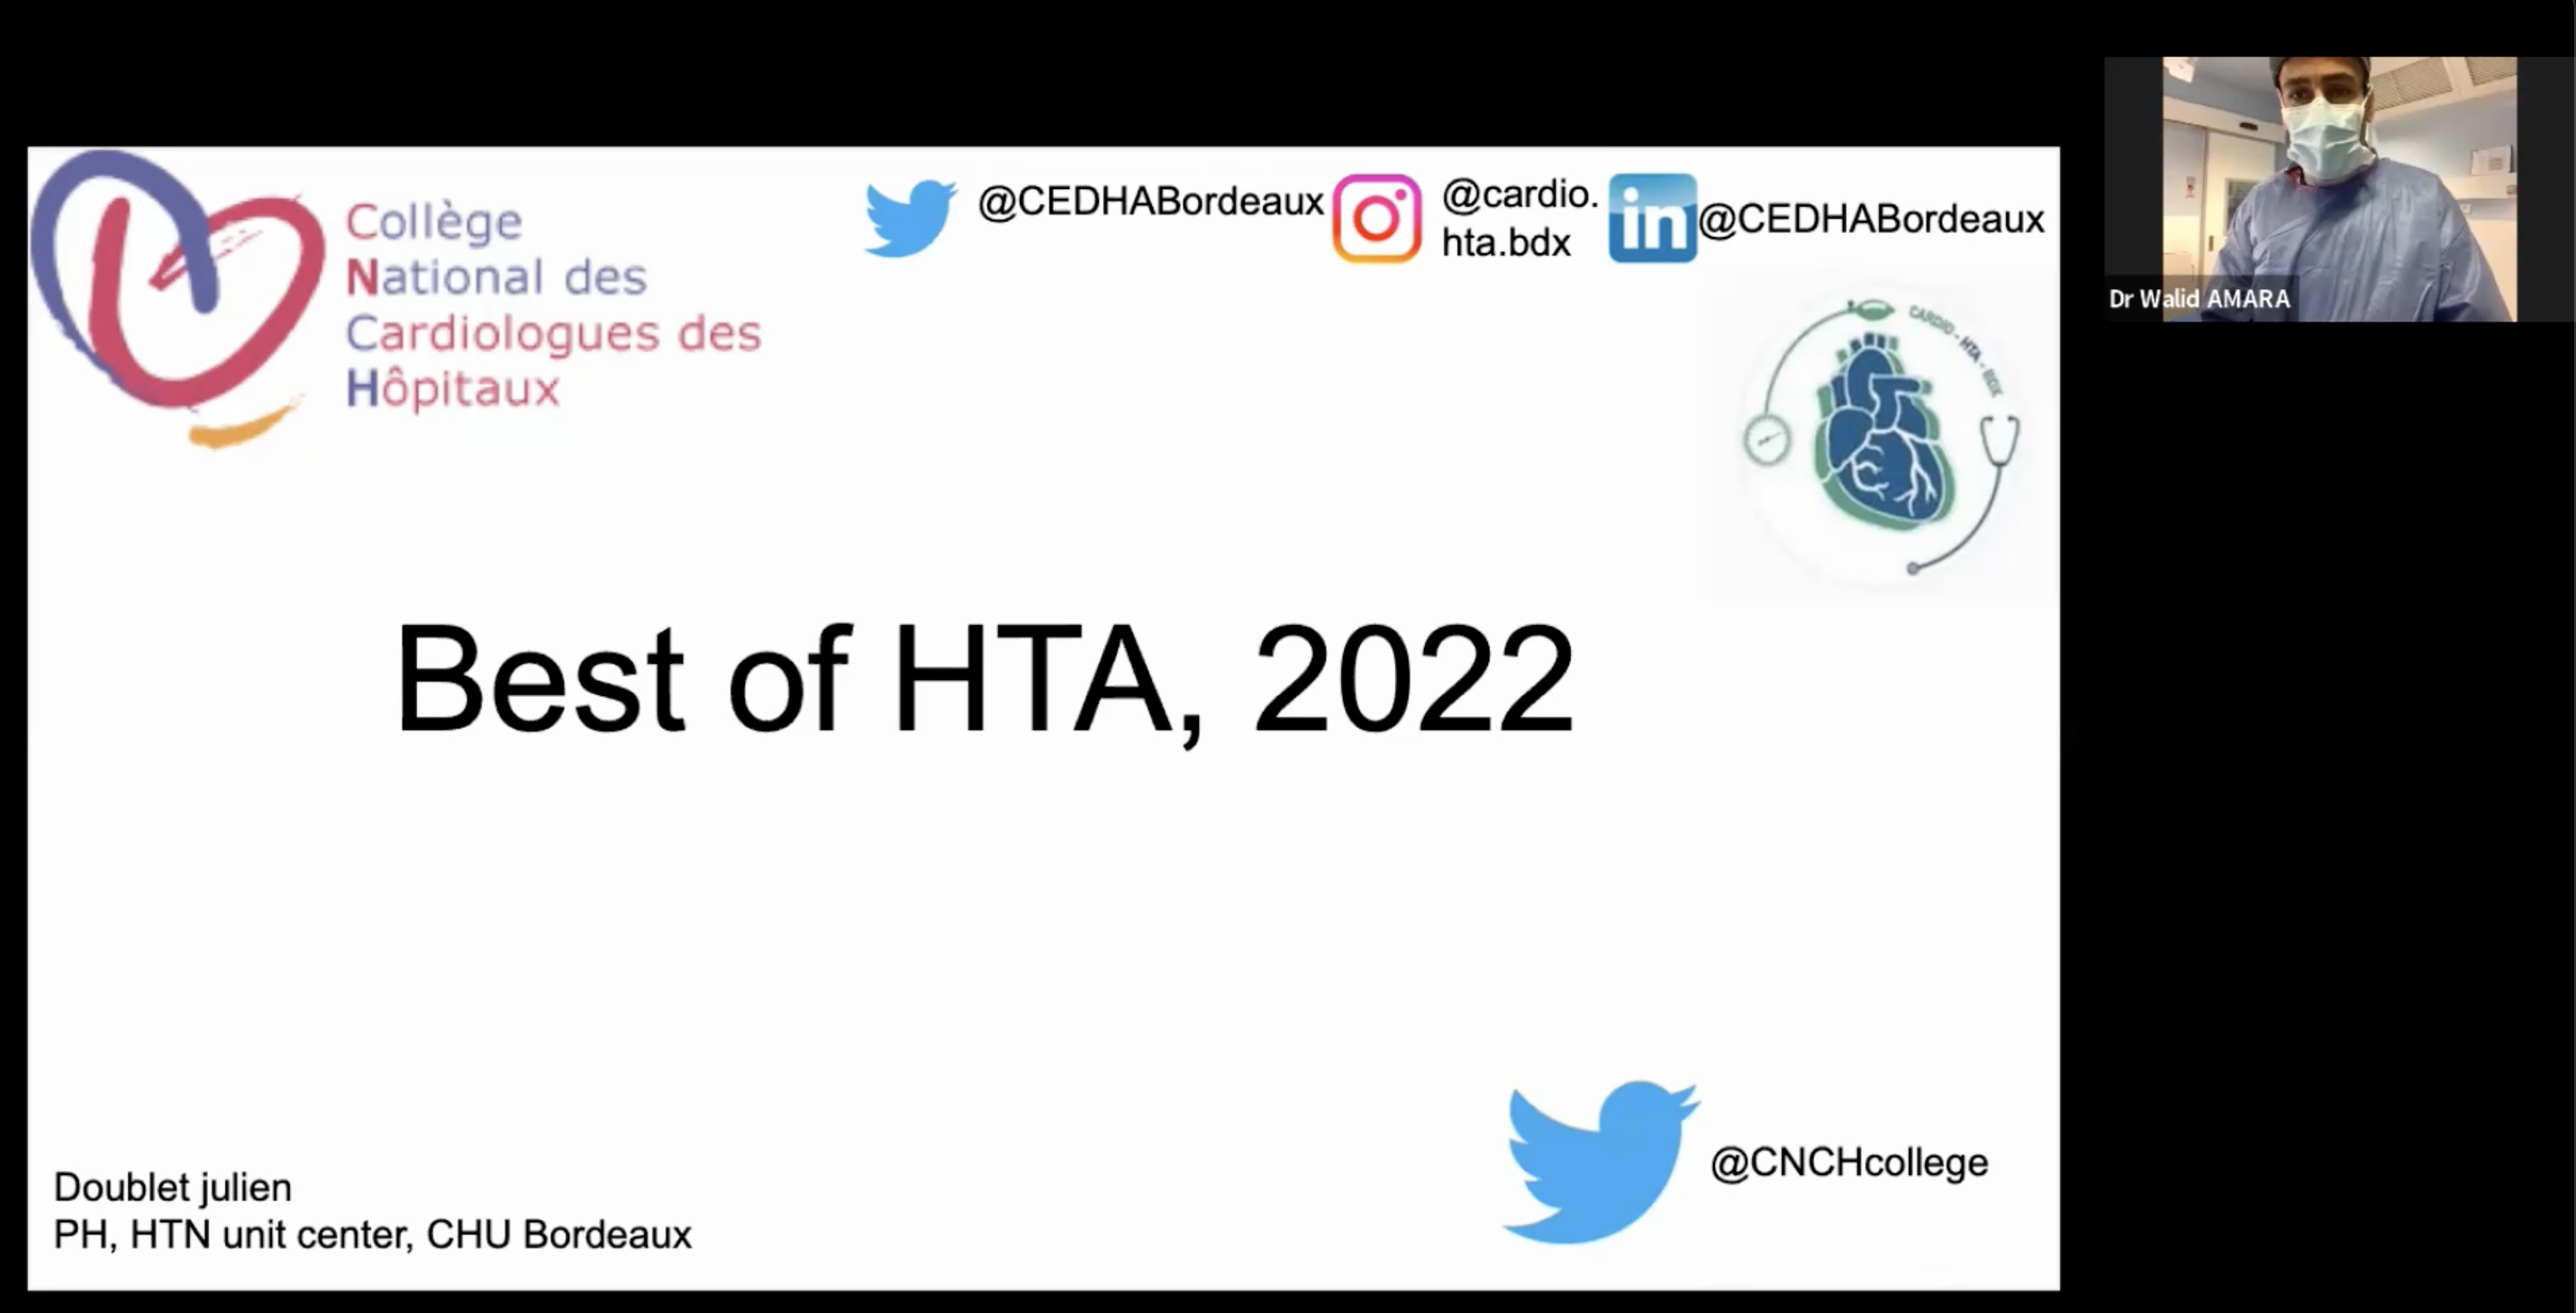 Le Best of HTA en 2022